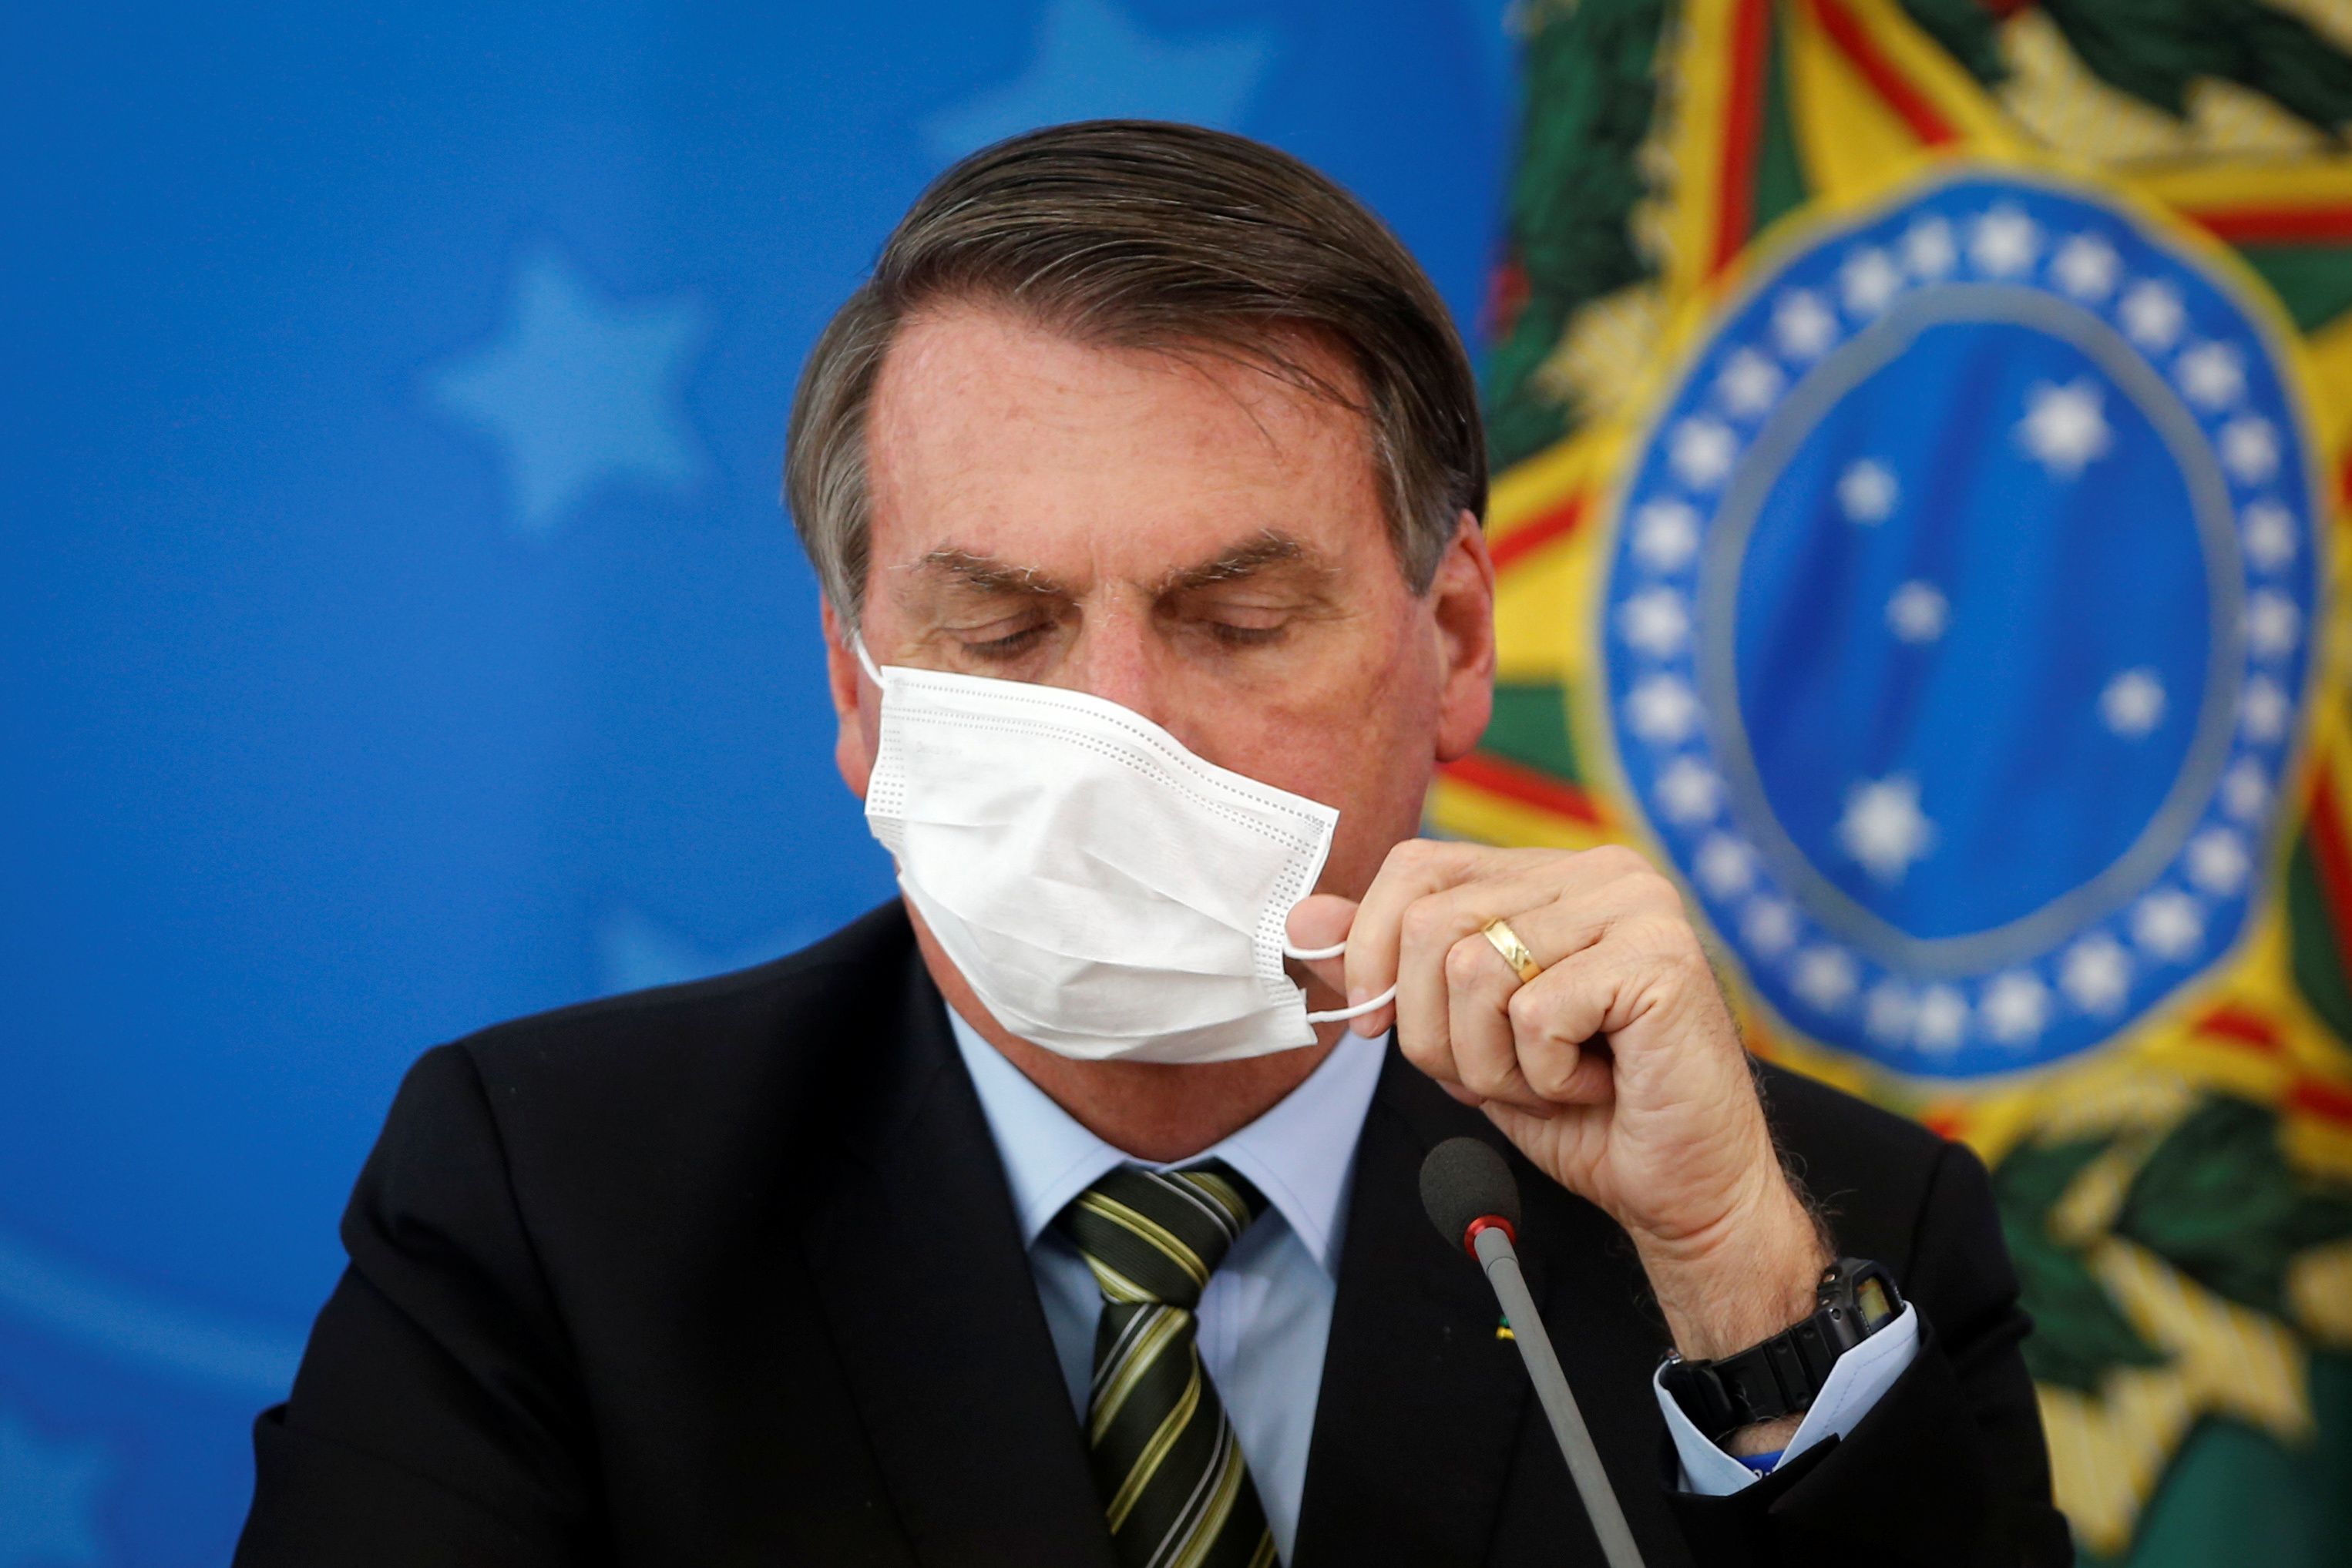 El presidente de Brasil, Jair Bolsonaro, se ajusta su mascarilla durante una locución pública. Foto: REUTERS/Adriano Machado